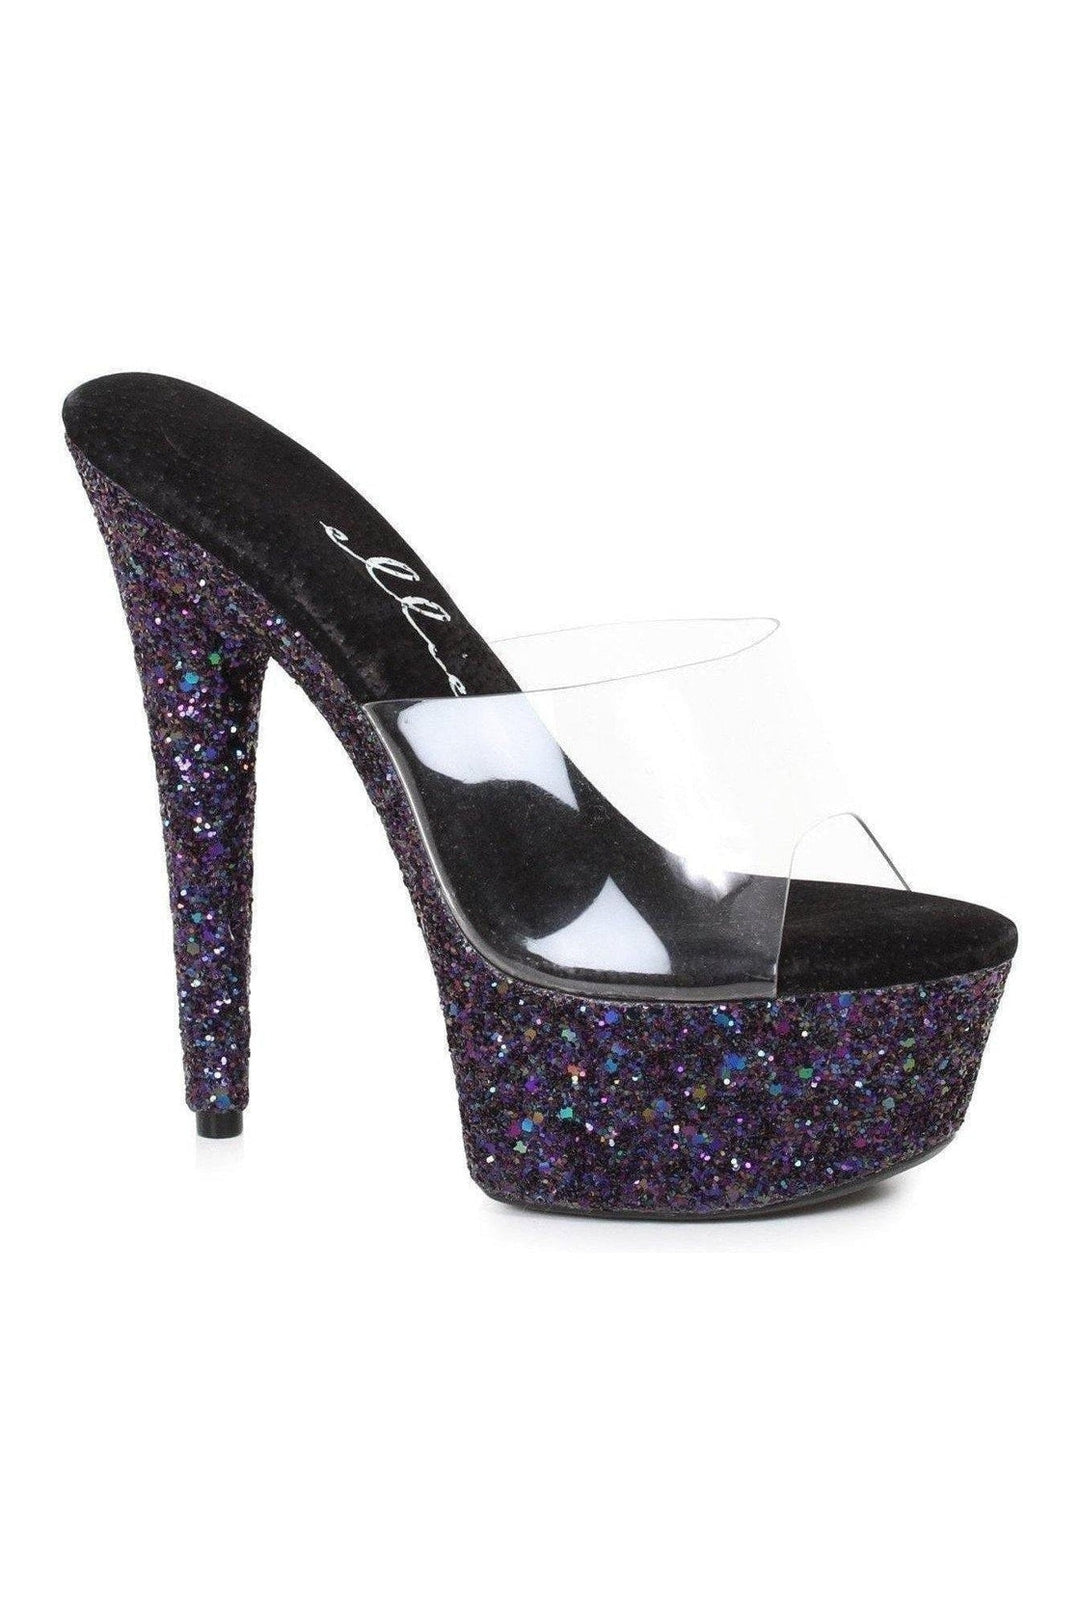 Ellie Shoes Black Slides Platform Stripper Shoes | Buy at Sexyshoes.com